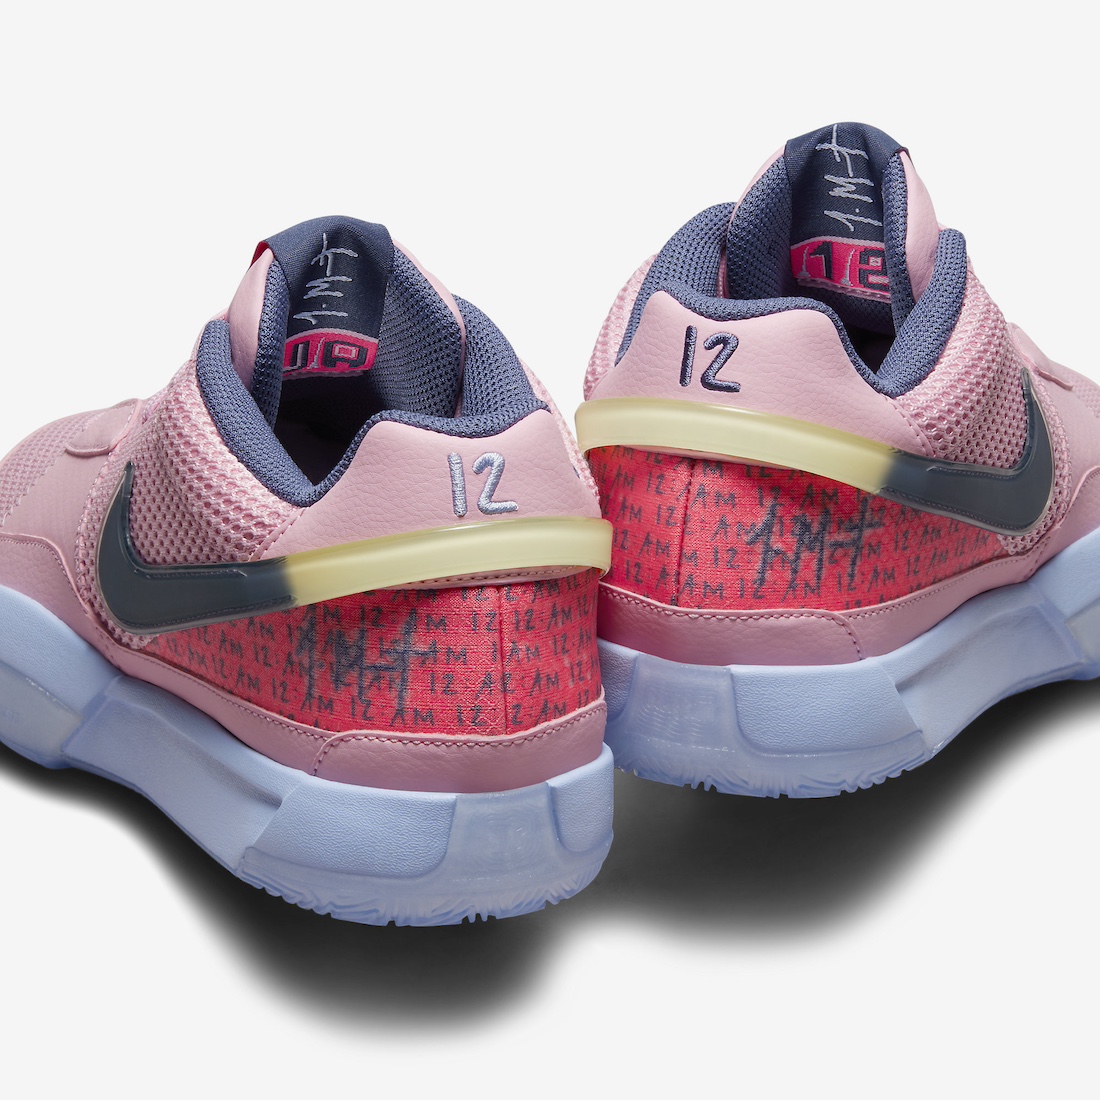 Nike Ja 1 PE Autograph Medium Soft Pink FV1281 600 9